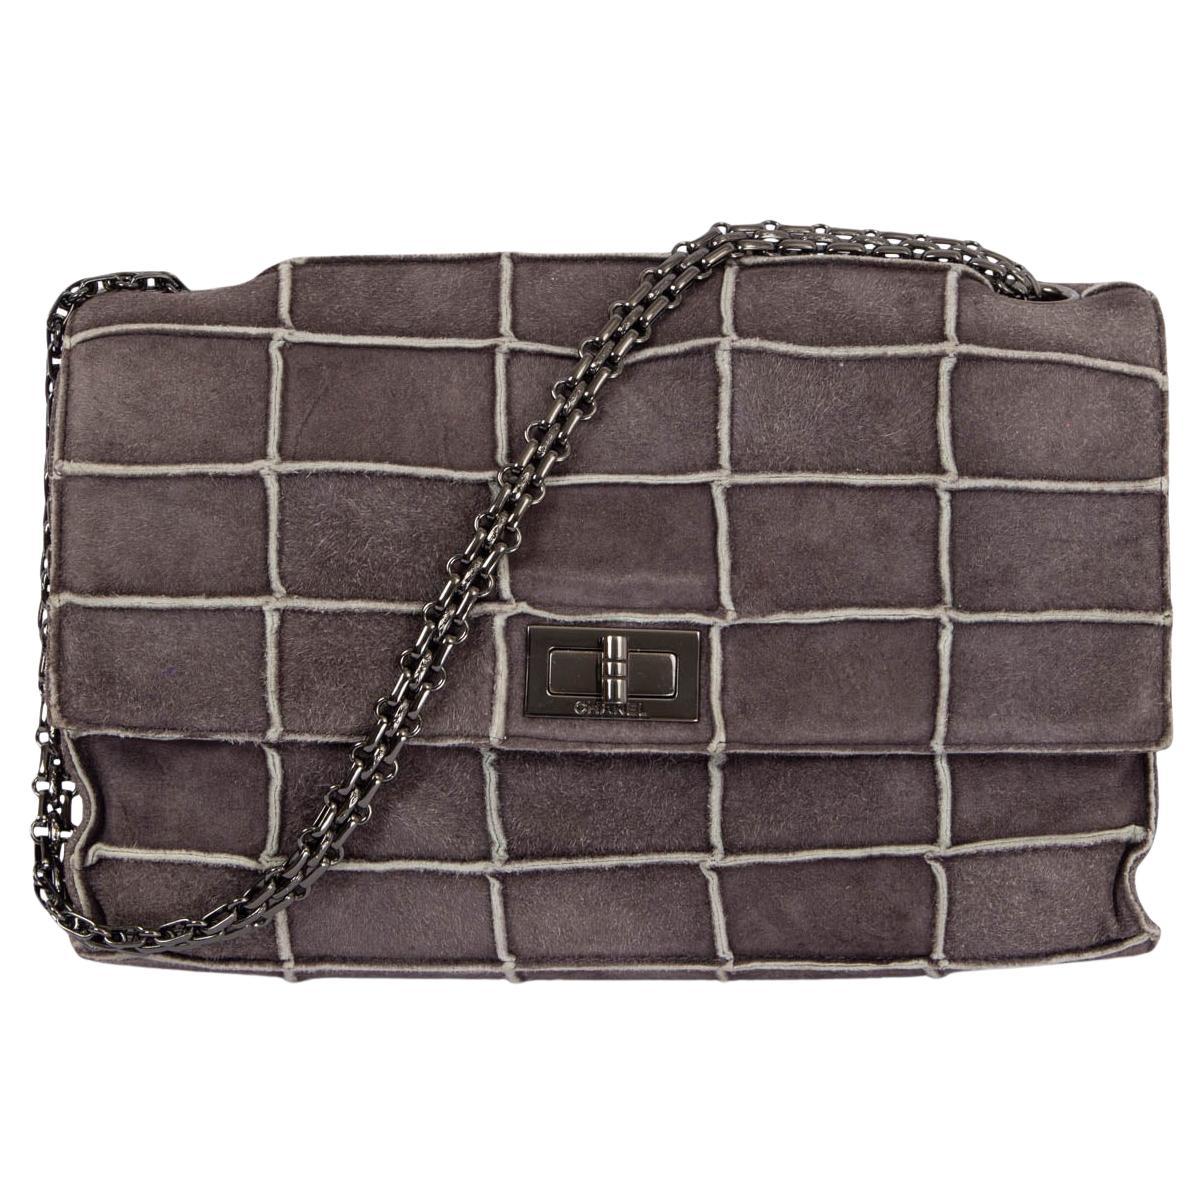 CHANEL grey suede 1997-99 255 REISSUE PATCHWORK FLAP Shoulder Bag